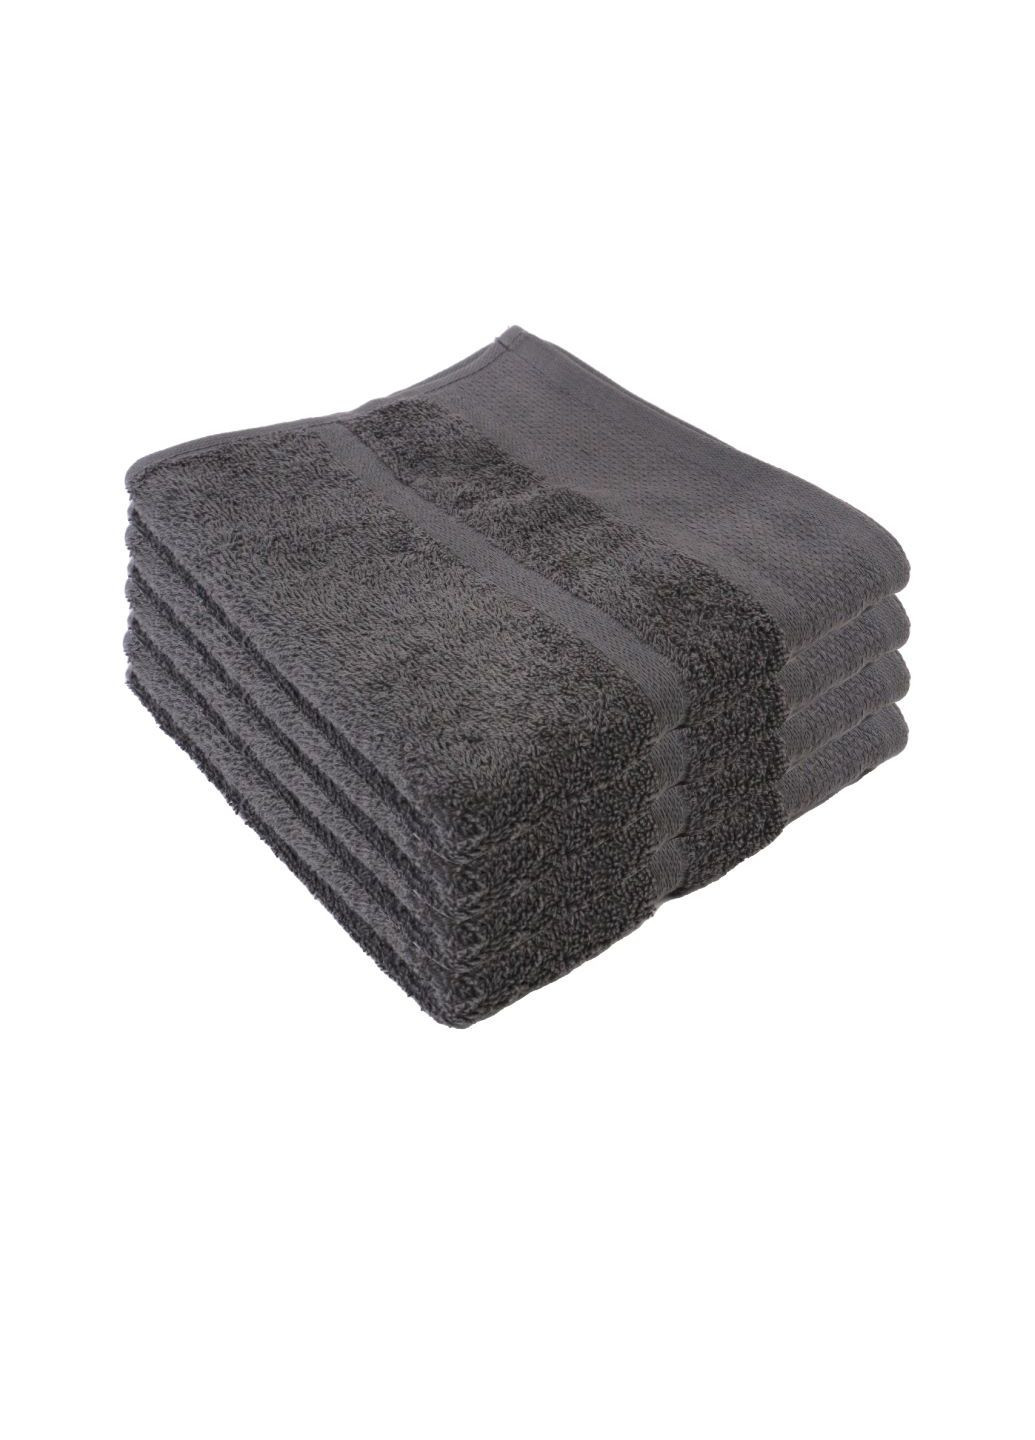 Home Ideas набор махровых полотенец для рук 4 шт 50х90 см серые серый производство - Германия